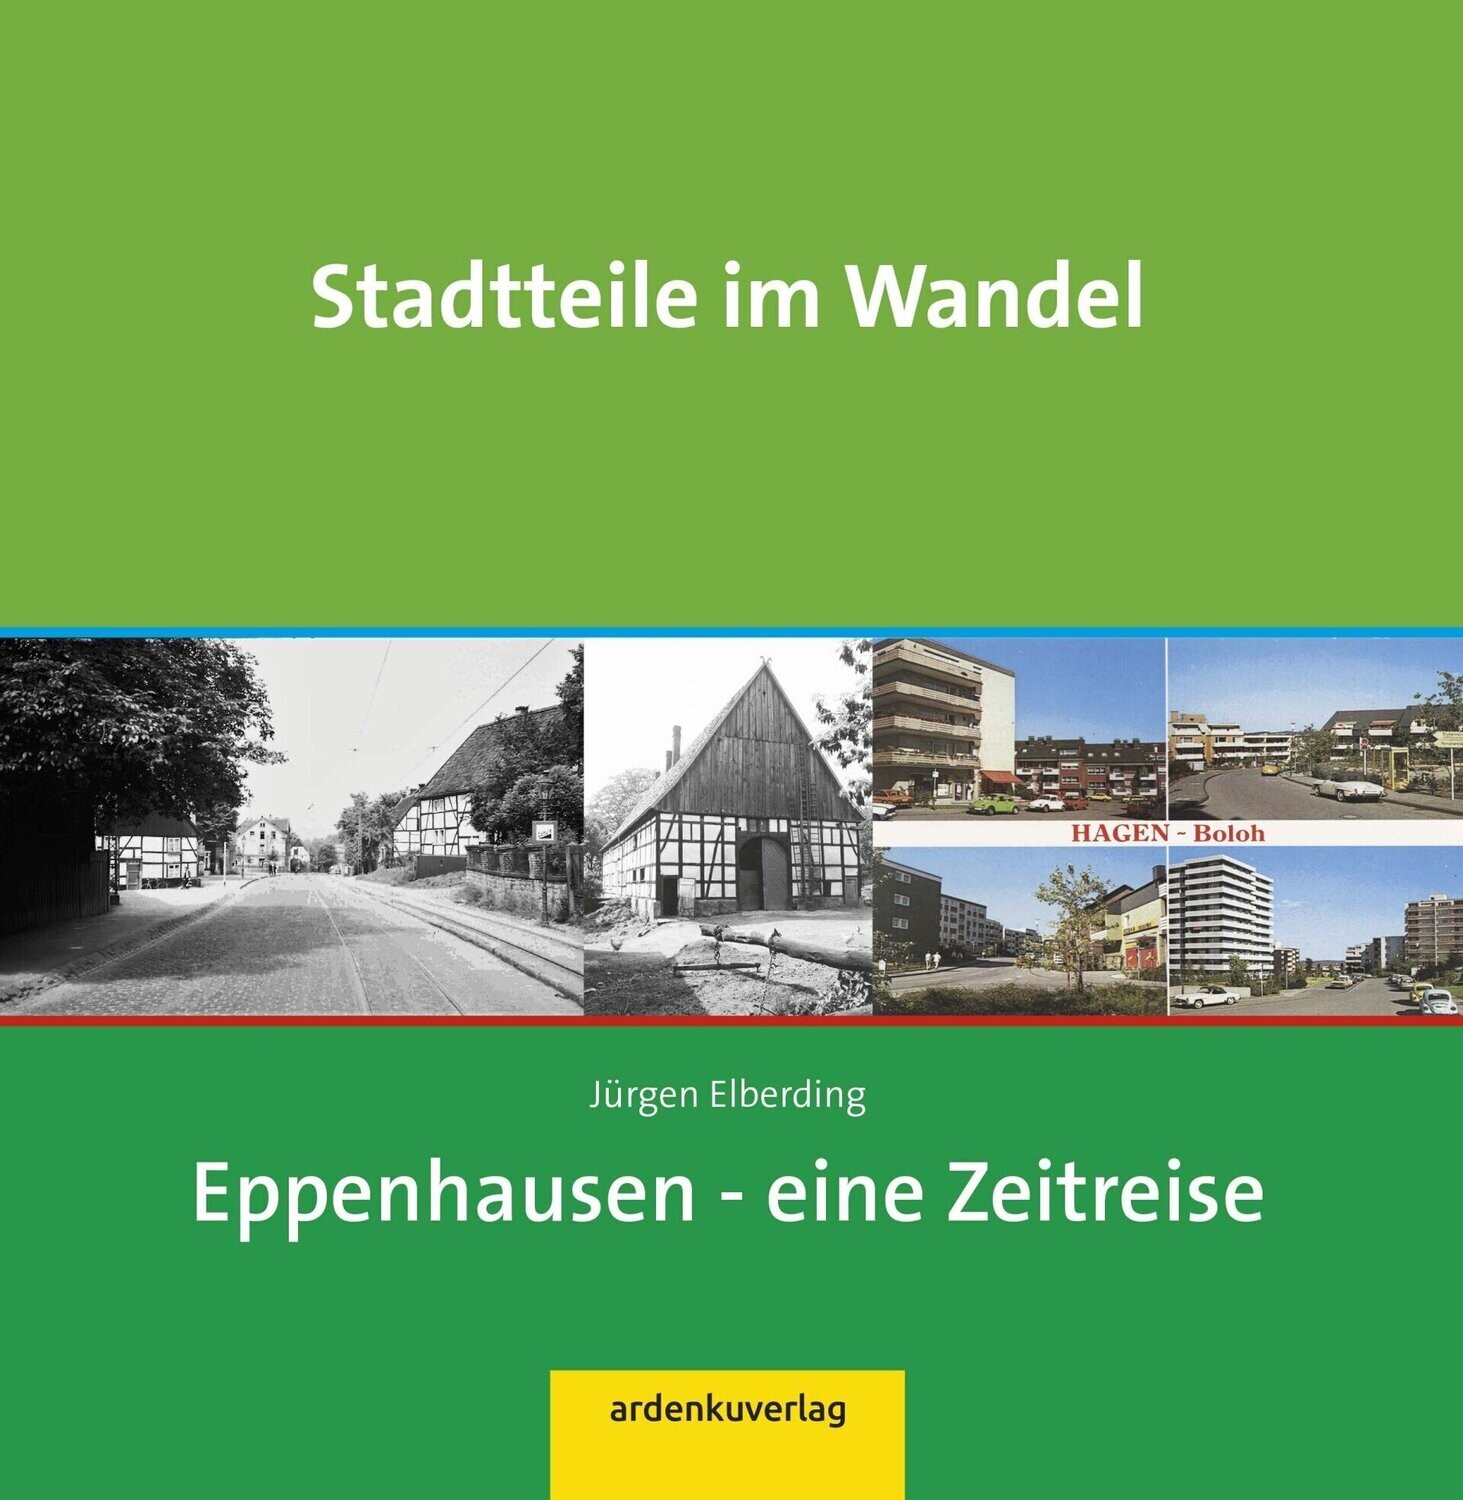 Stadtteile im Wandel – Eppenhausen